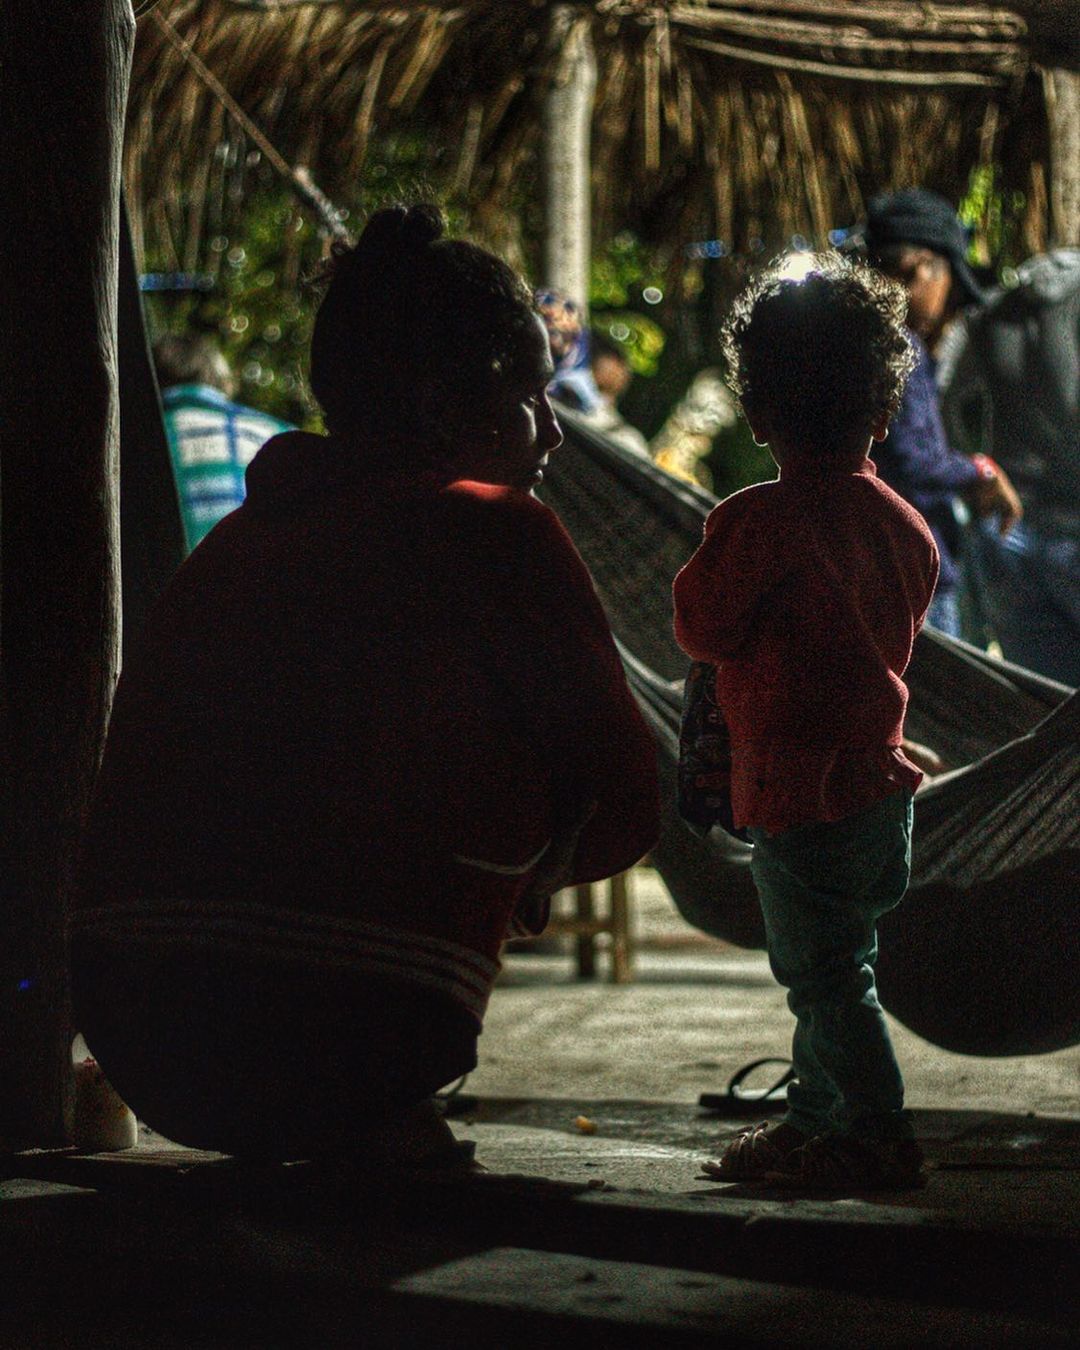 Foto tirada de família Kalankó, ameríndios de Alagoas | Foto: Instagram/Pedro Paulo